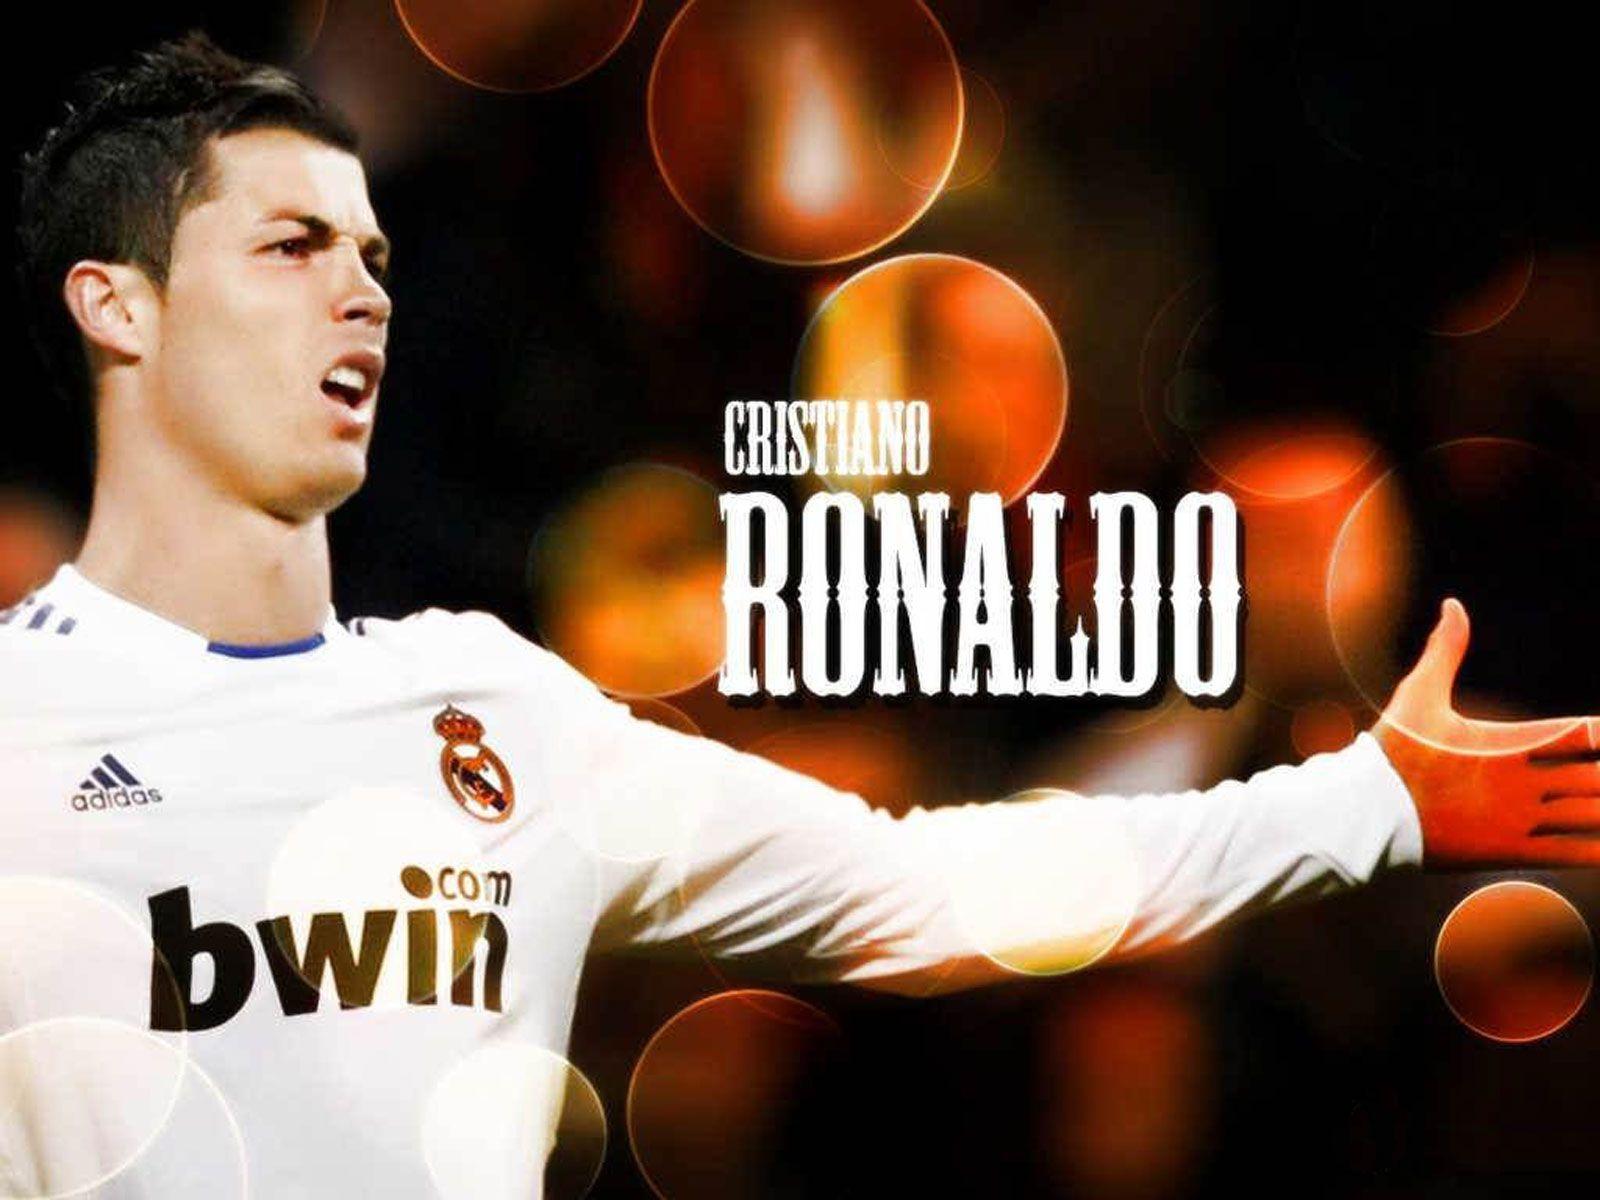 Cristiano Ronaldo Wallpaper 1920x1080 Wallpaper